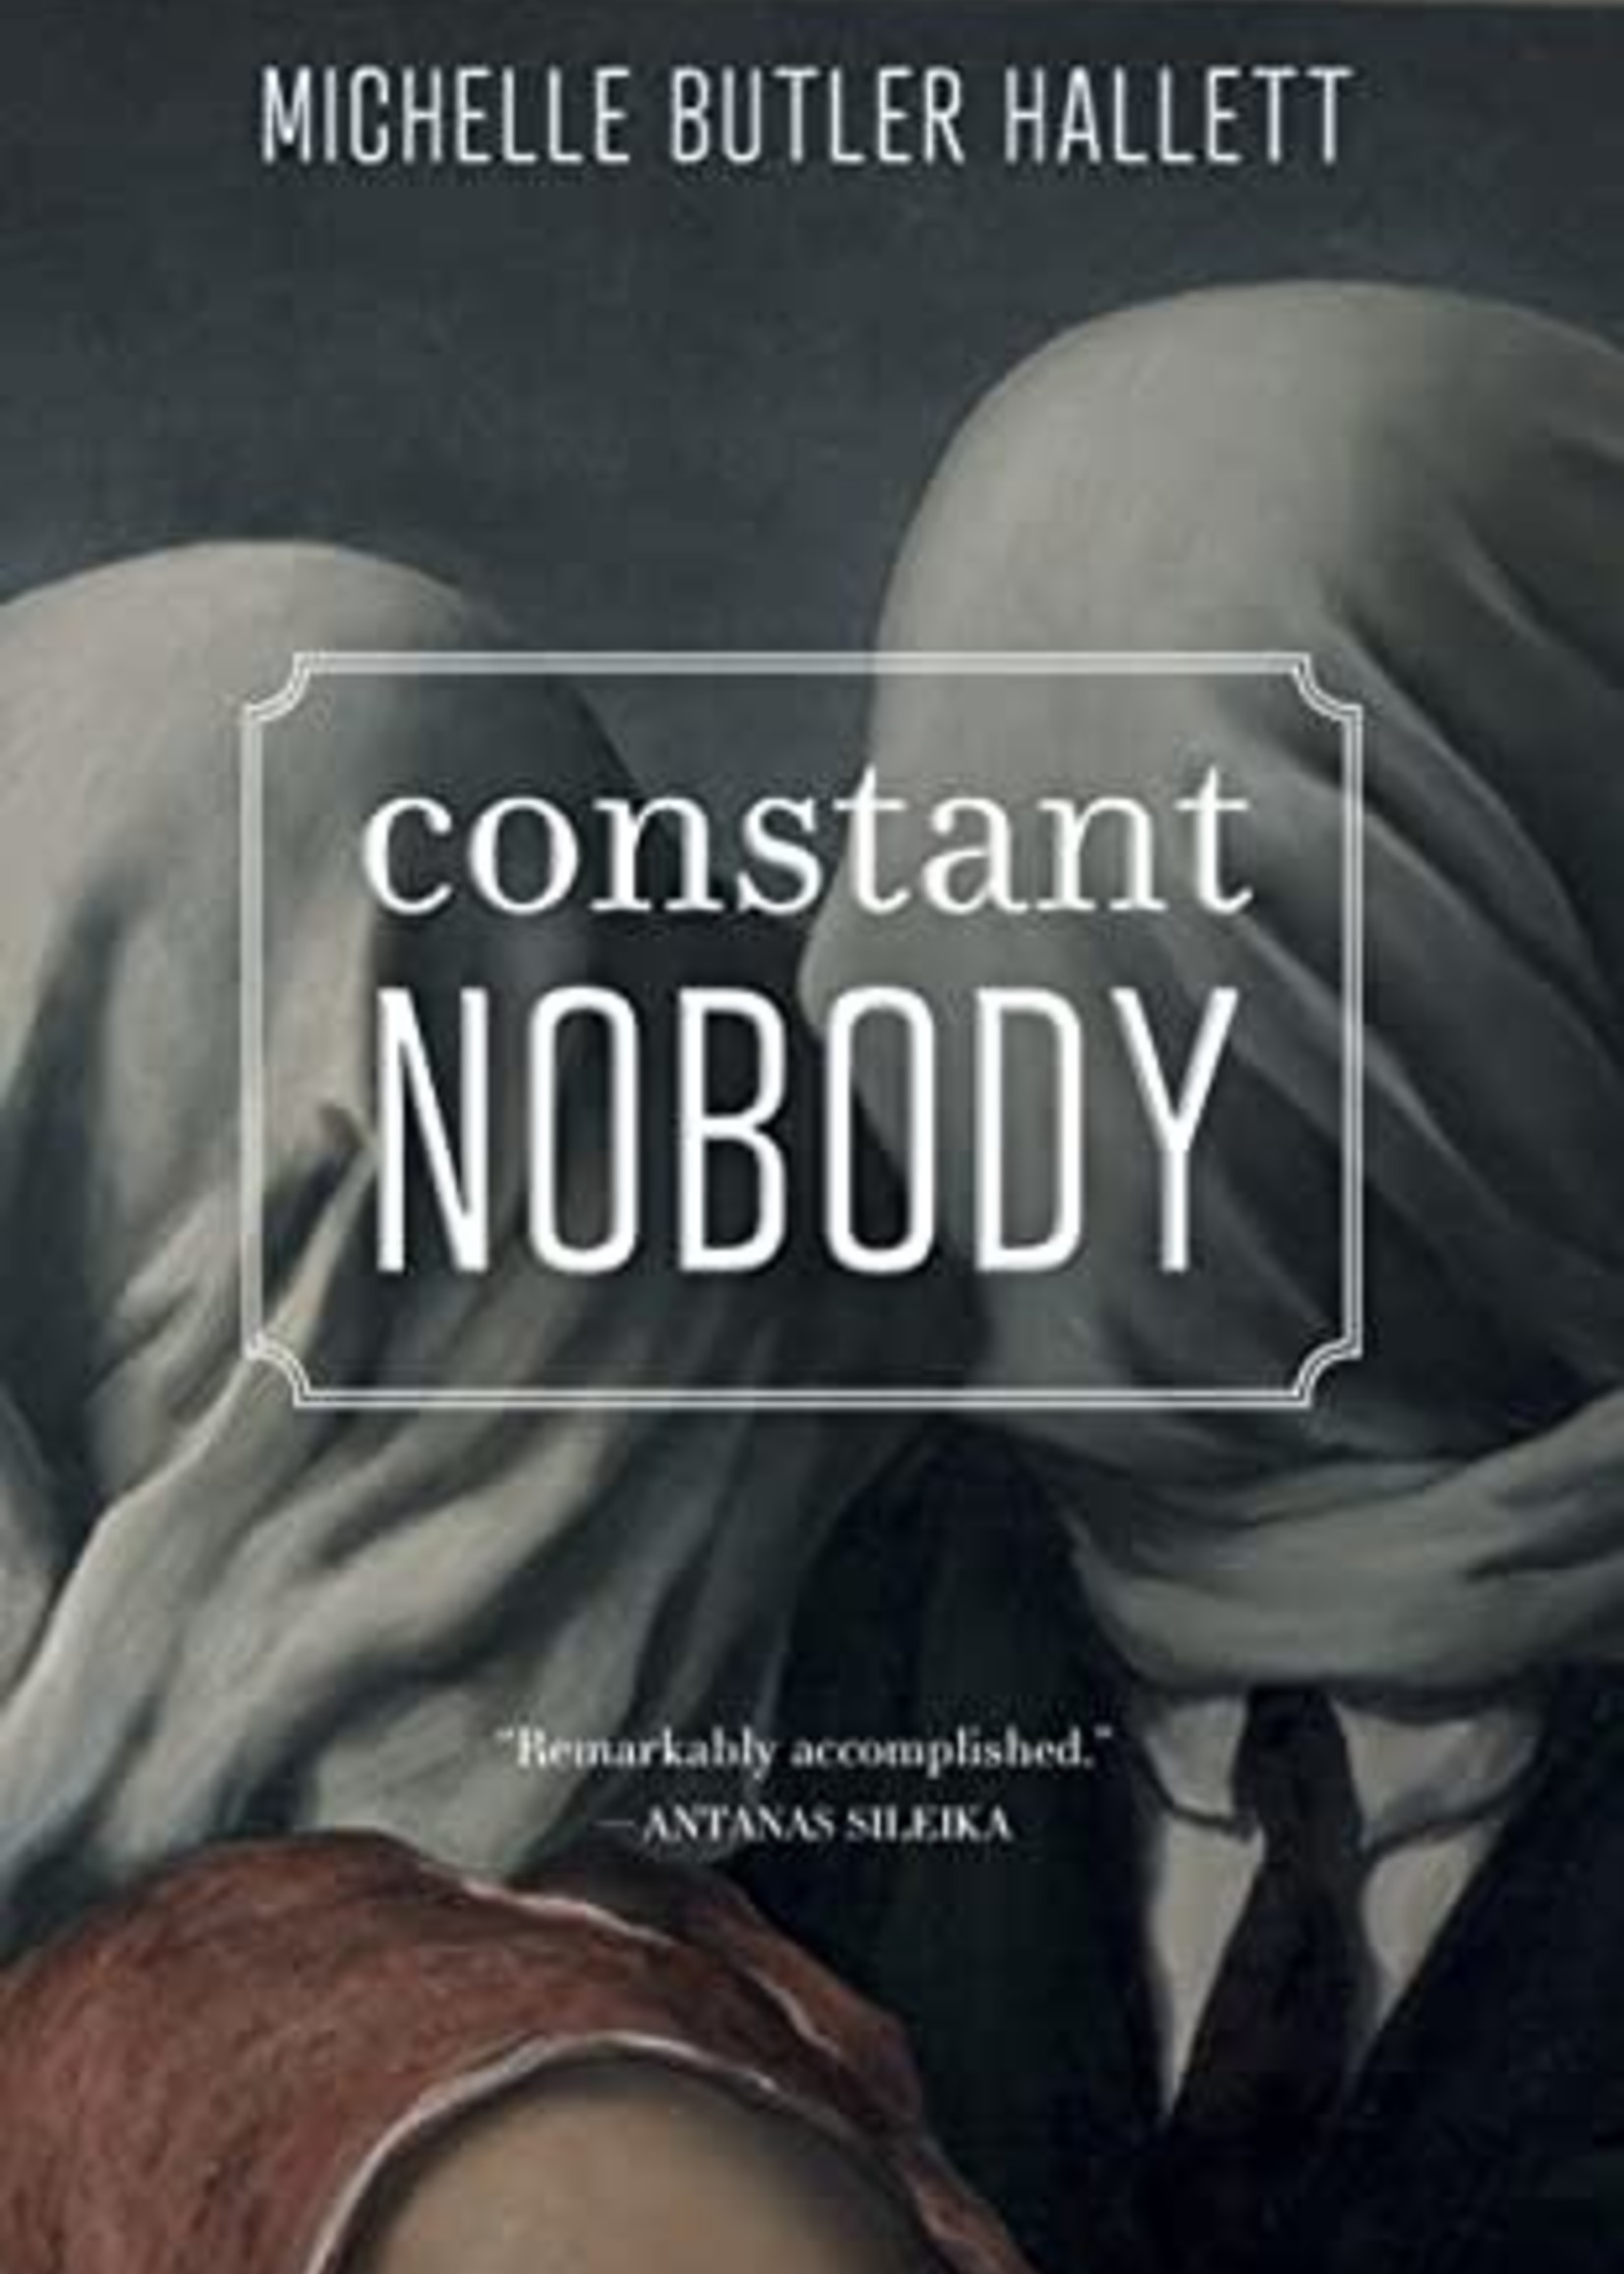 Constant Nobody by Michelle Butler Hallett